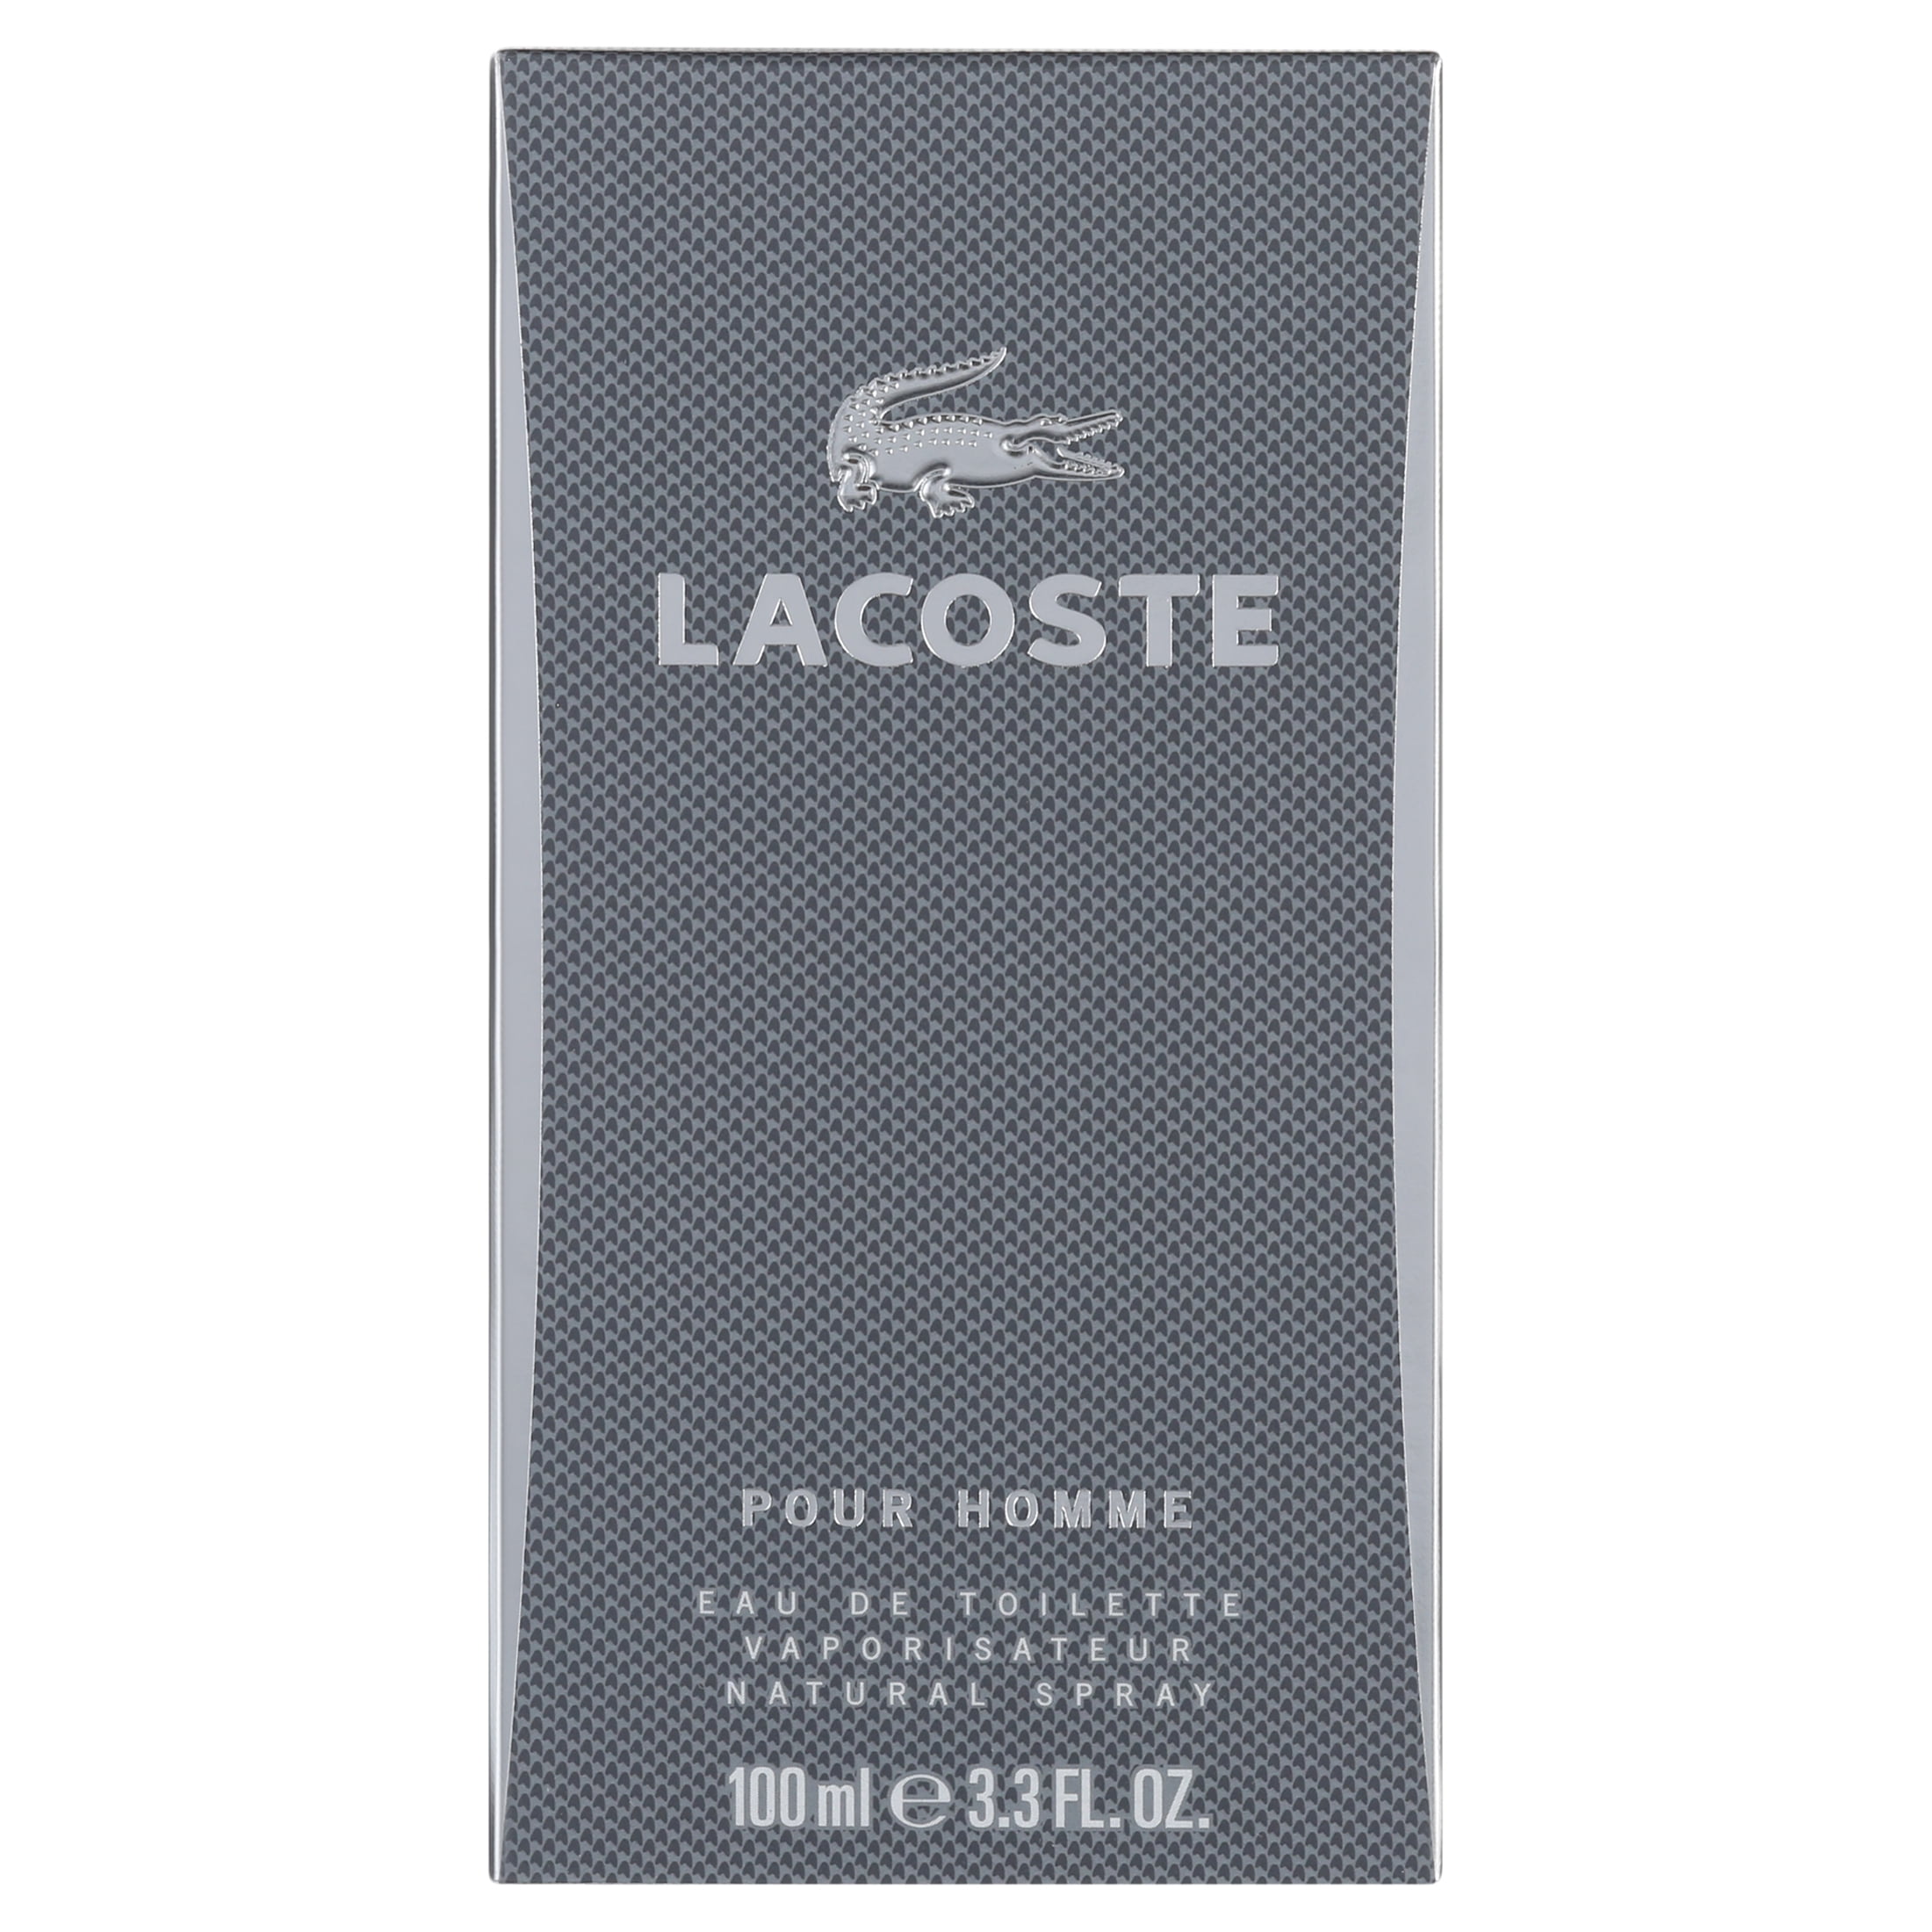 Lacoste Pour Homme Eau De Toilette Spray, for Men, 3.3 oz - Walmart.com